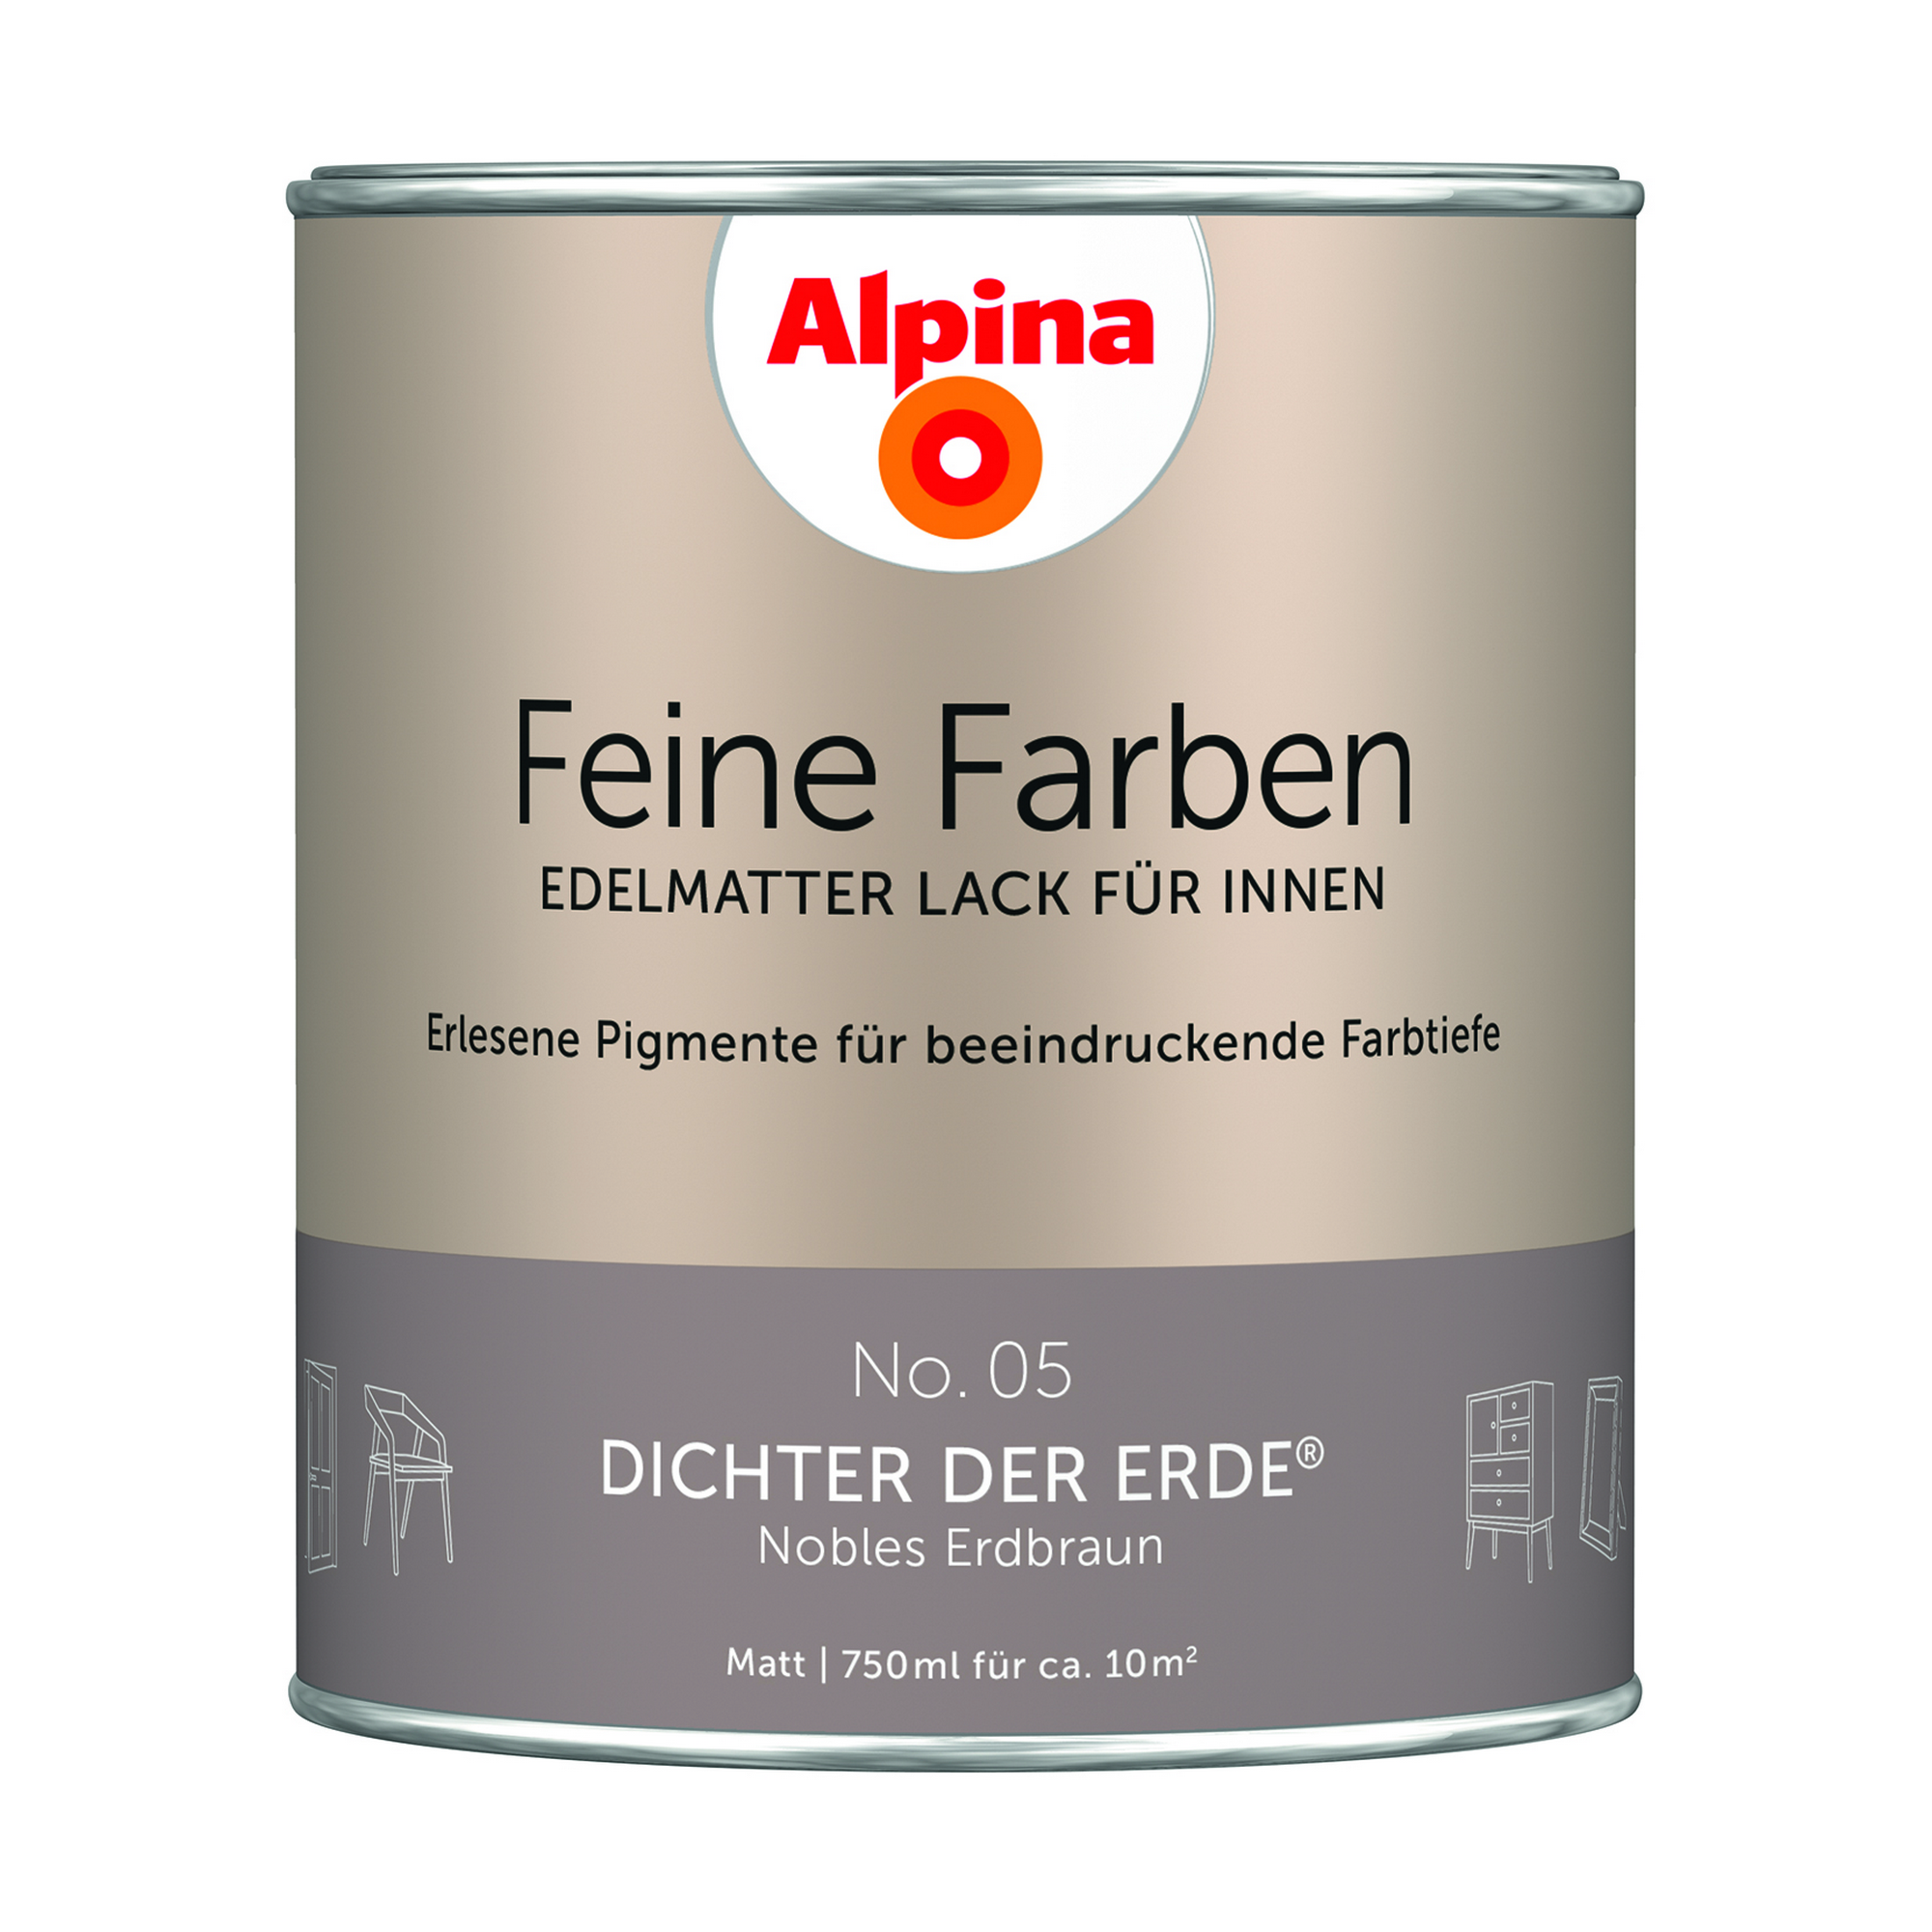 Feine Farben 'Dichter der Erde' erdbraun matt 750 ml + product picture